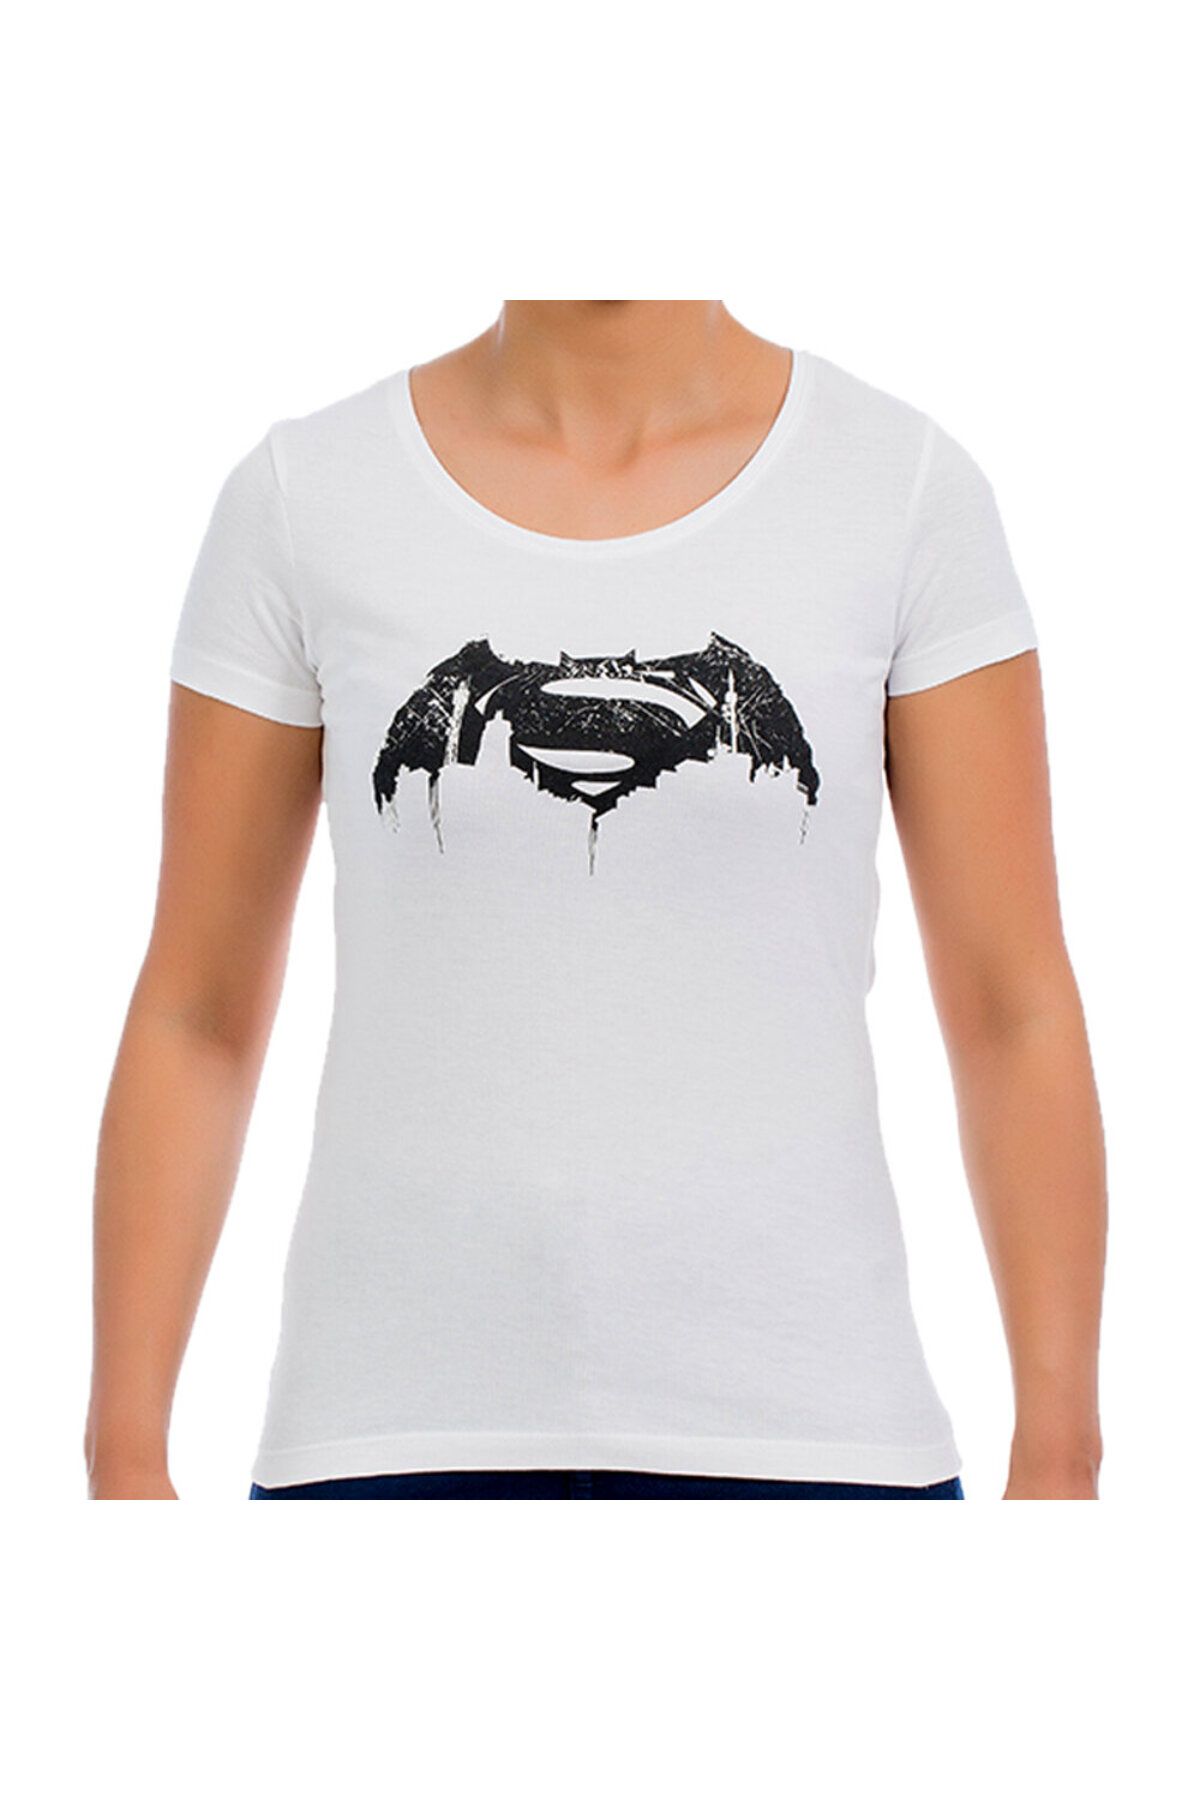 Batman Beyaz Kadın T-shirt